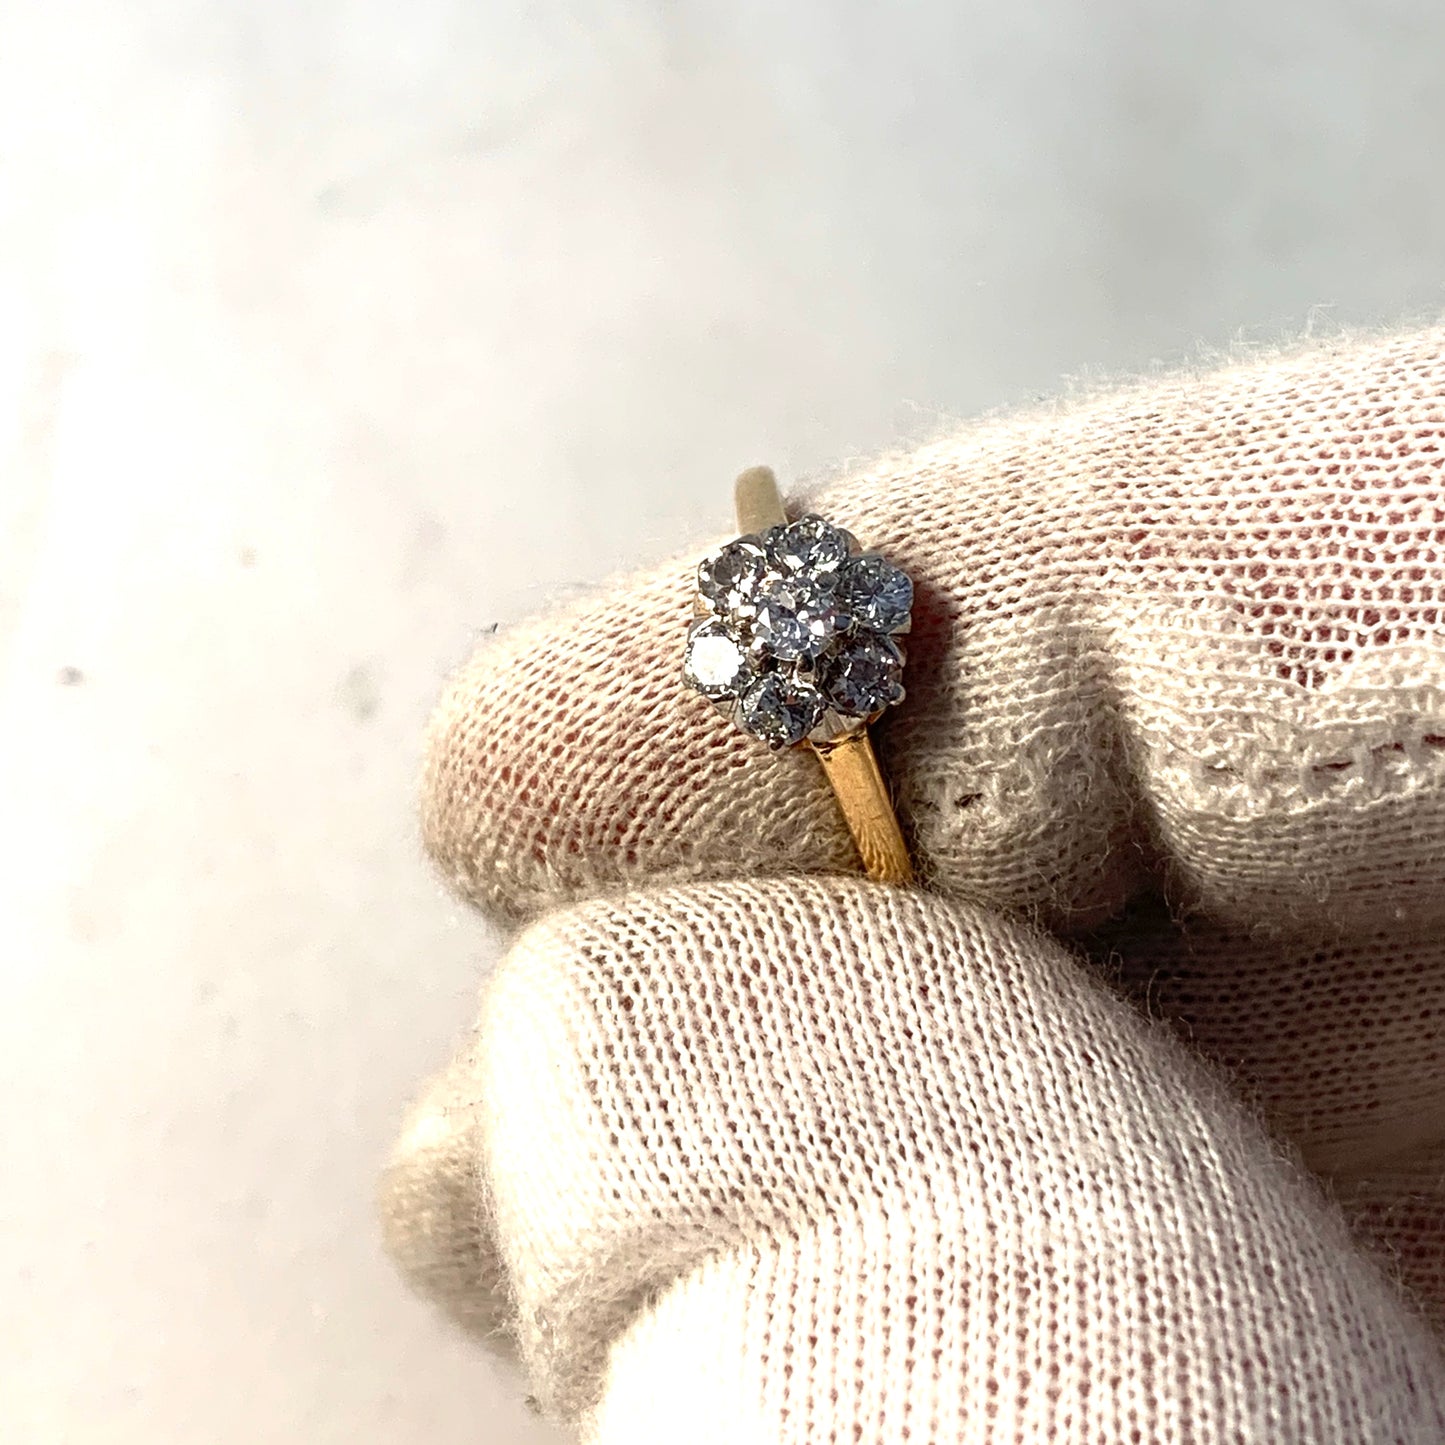 G Dahlgren, Sweden 1927. 18k Gold 0.5ctw Diamond Engagement Ring